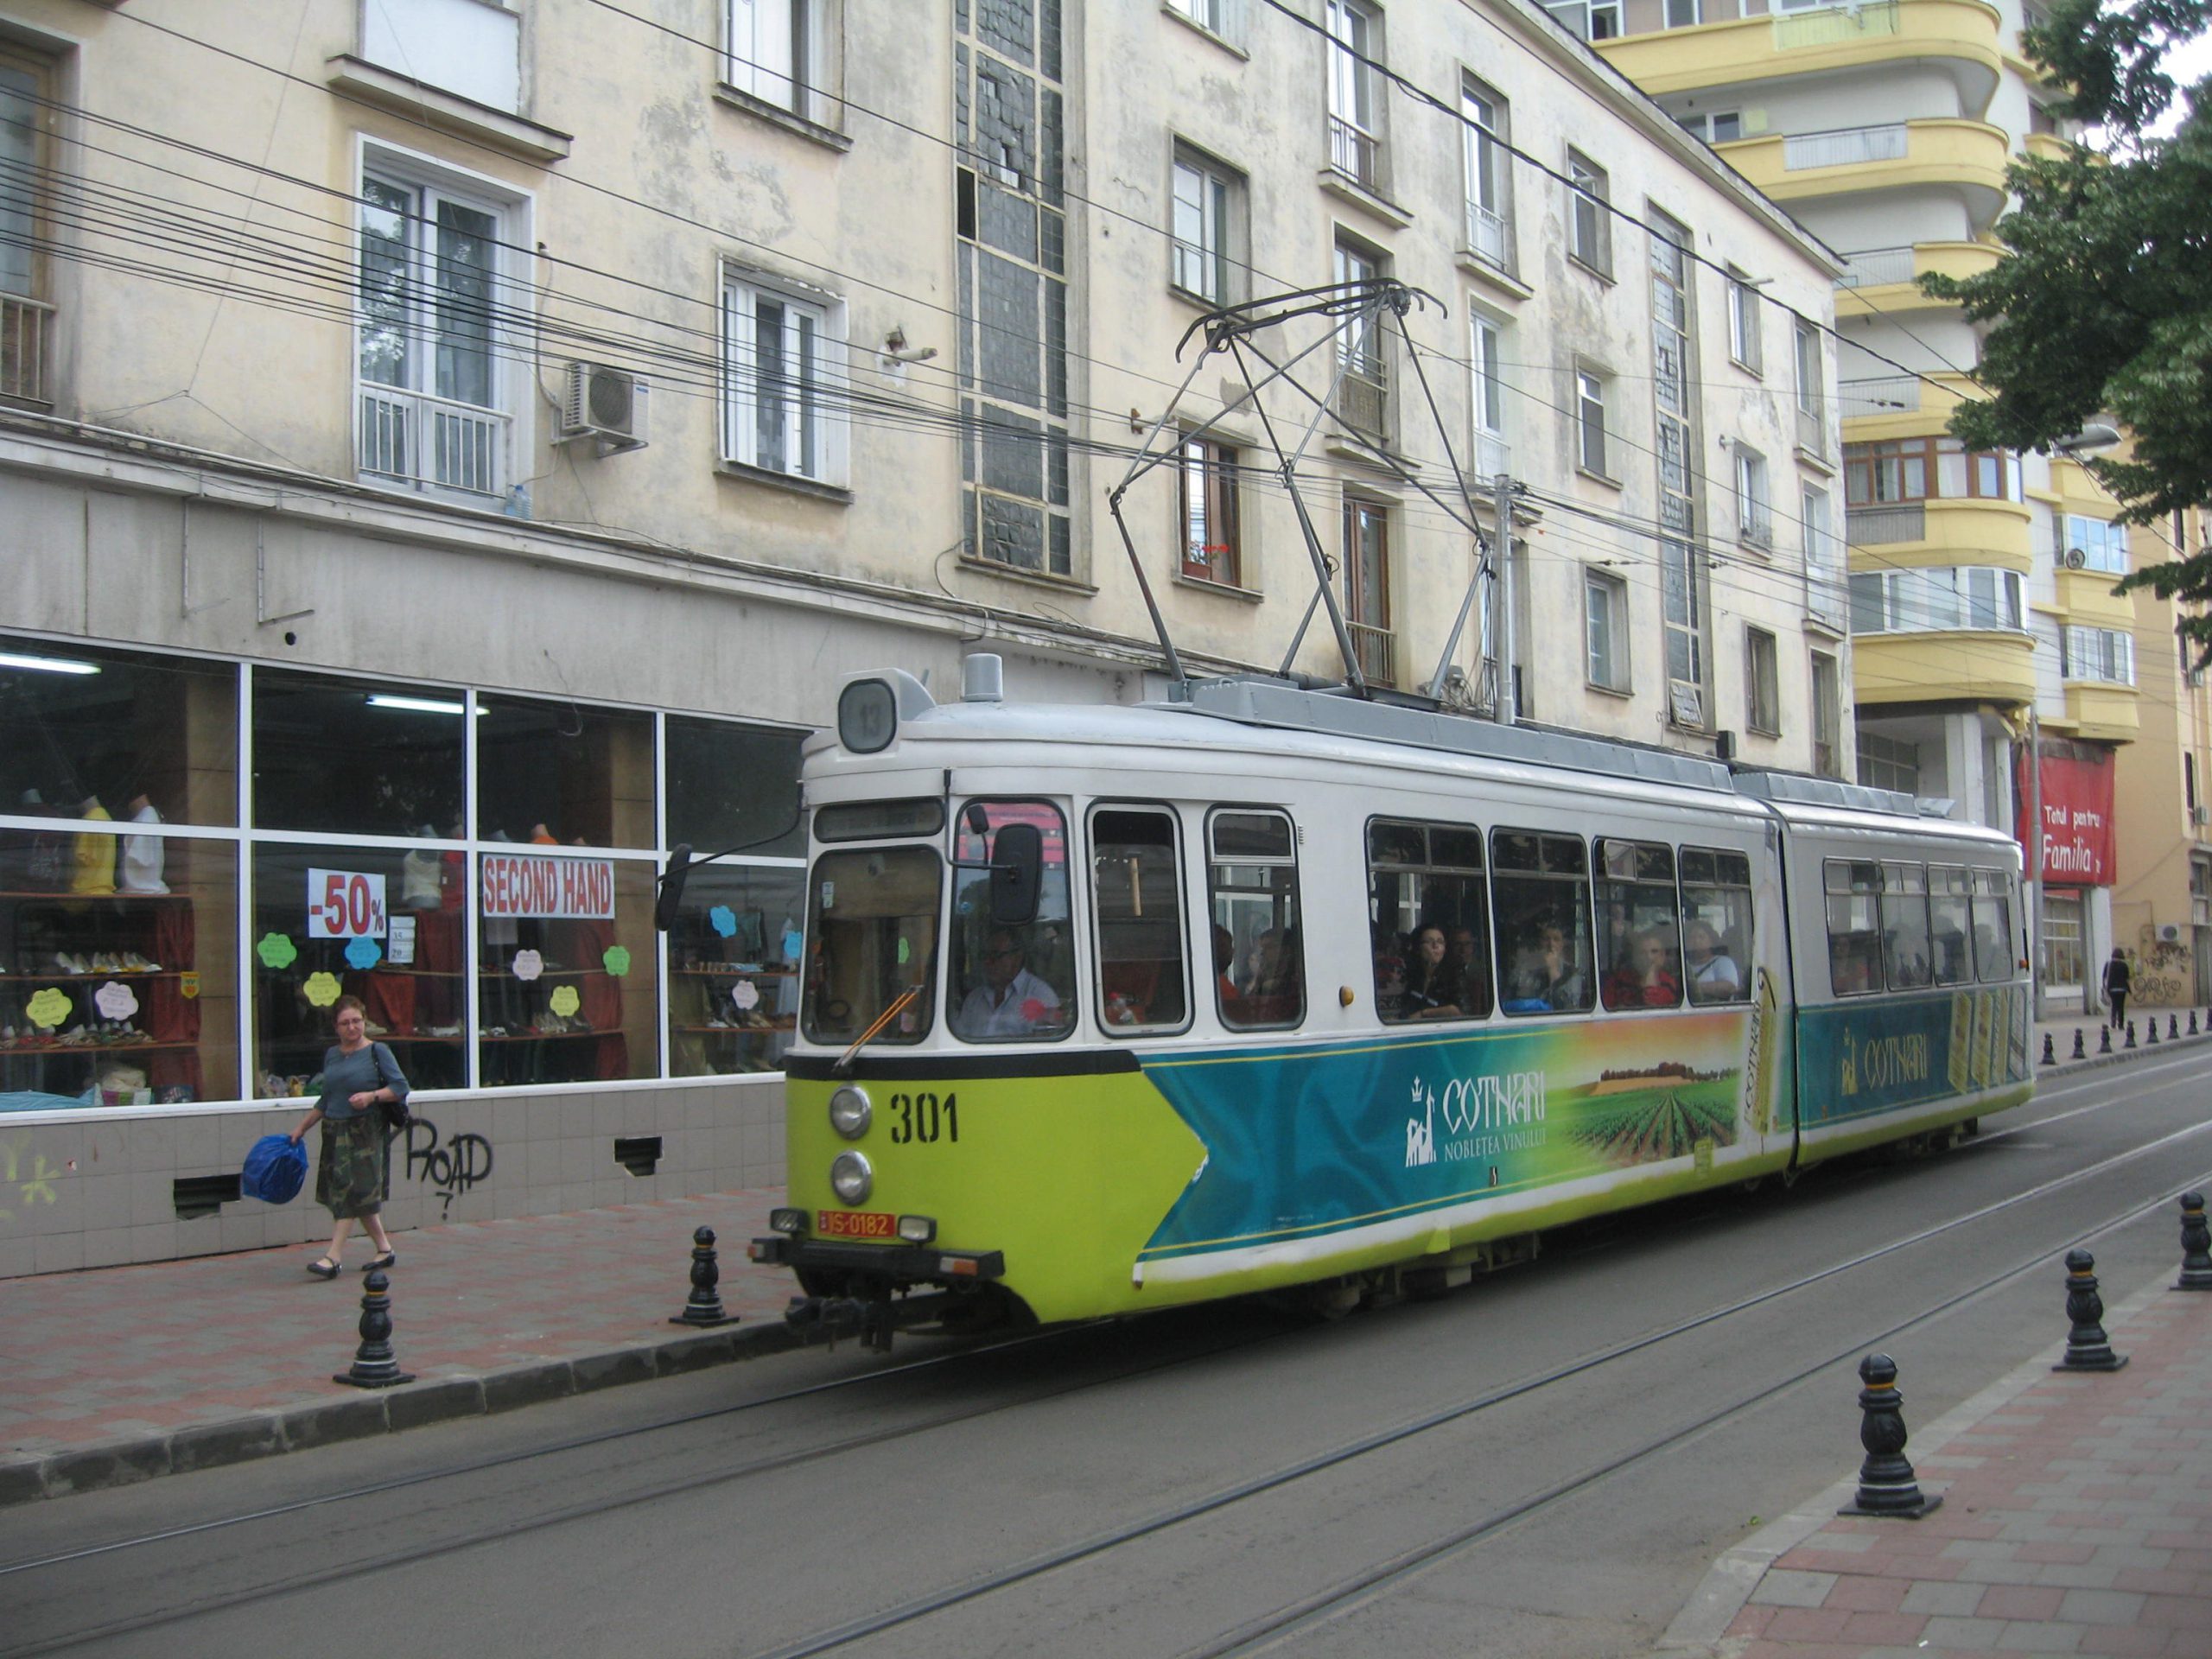  Prezenţa lui Iohannis în oraş schimbă mersul tramvaielor şi autobuzelor CTP